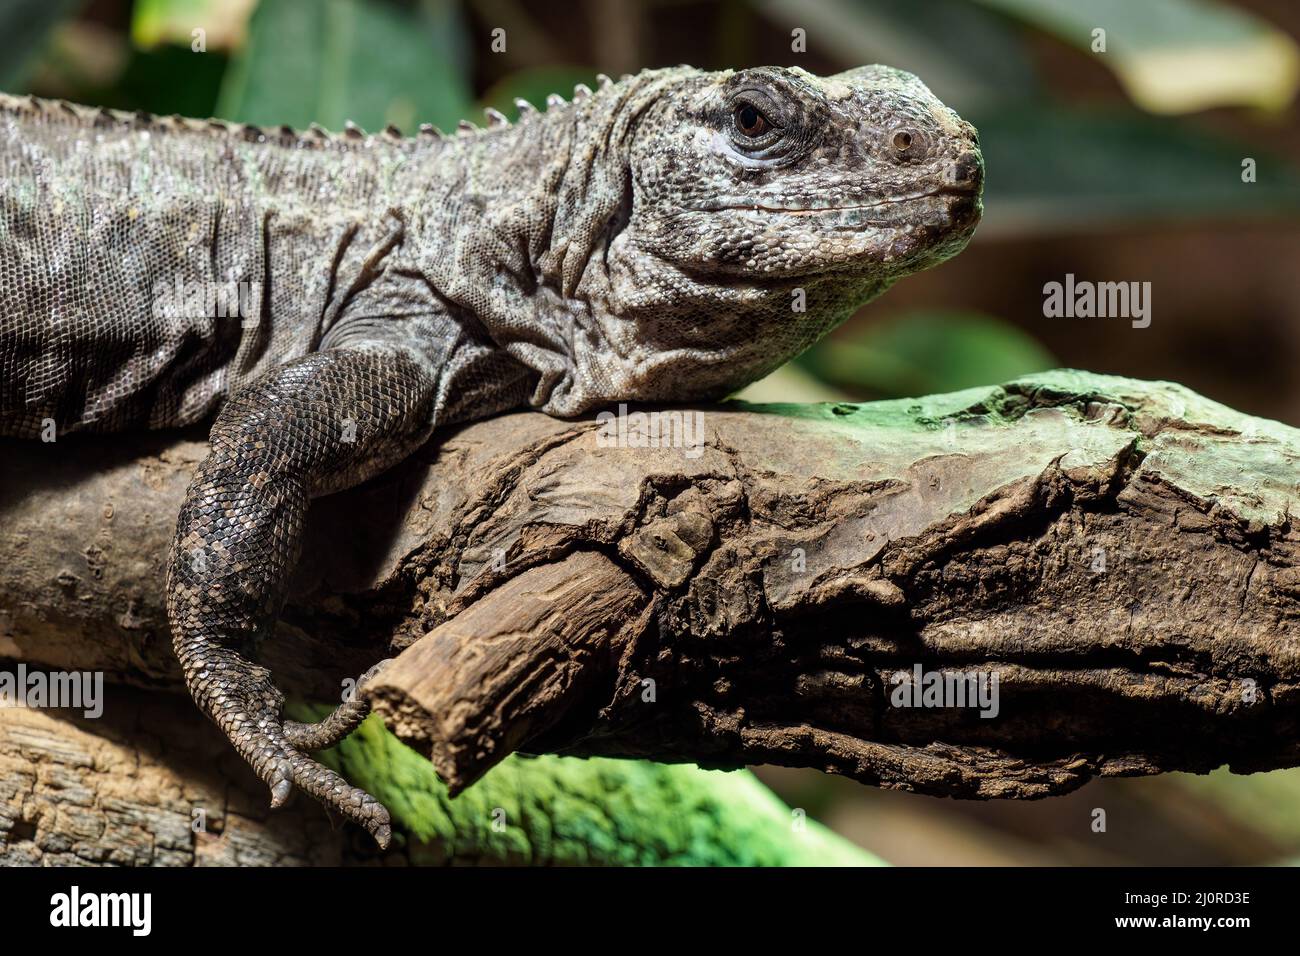 L'Utila Iguana sur une branche (Ctenosaura bakeri) est une espèce de lézard en danger critique d'extinction. Banque D'Images